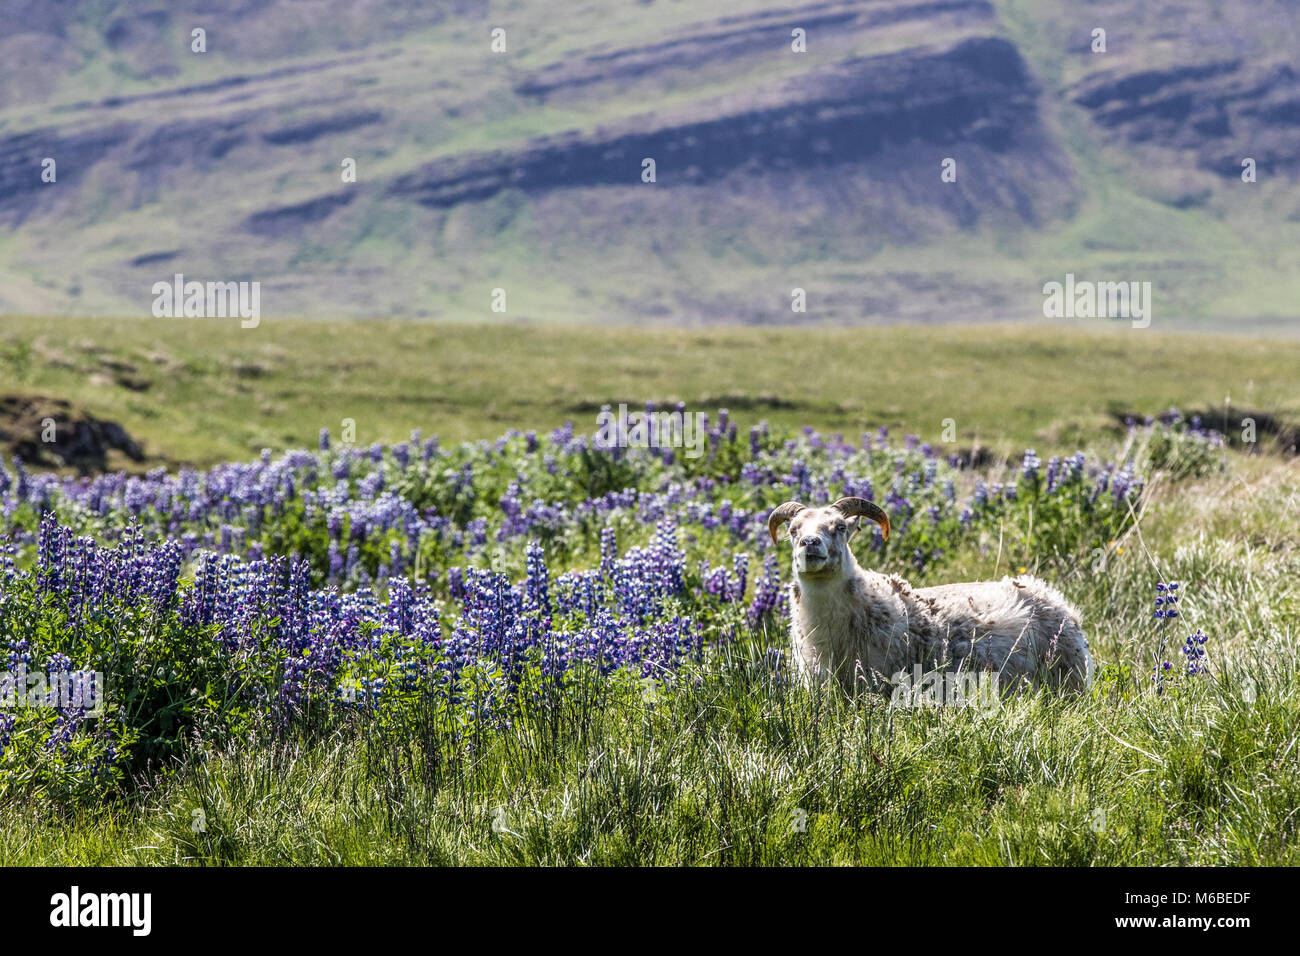 Hardy isländischen Schaf Schaf, Weide mit Nootka Lupine (Lupinus nootkatensis). Lila Blüten eingeführt Stickstoff und Boden fertilit zu erhöhen. Stockfoto